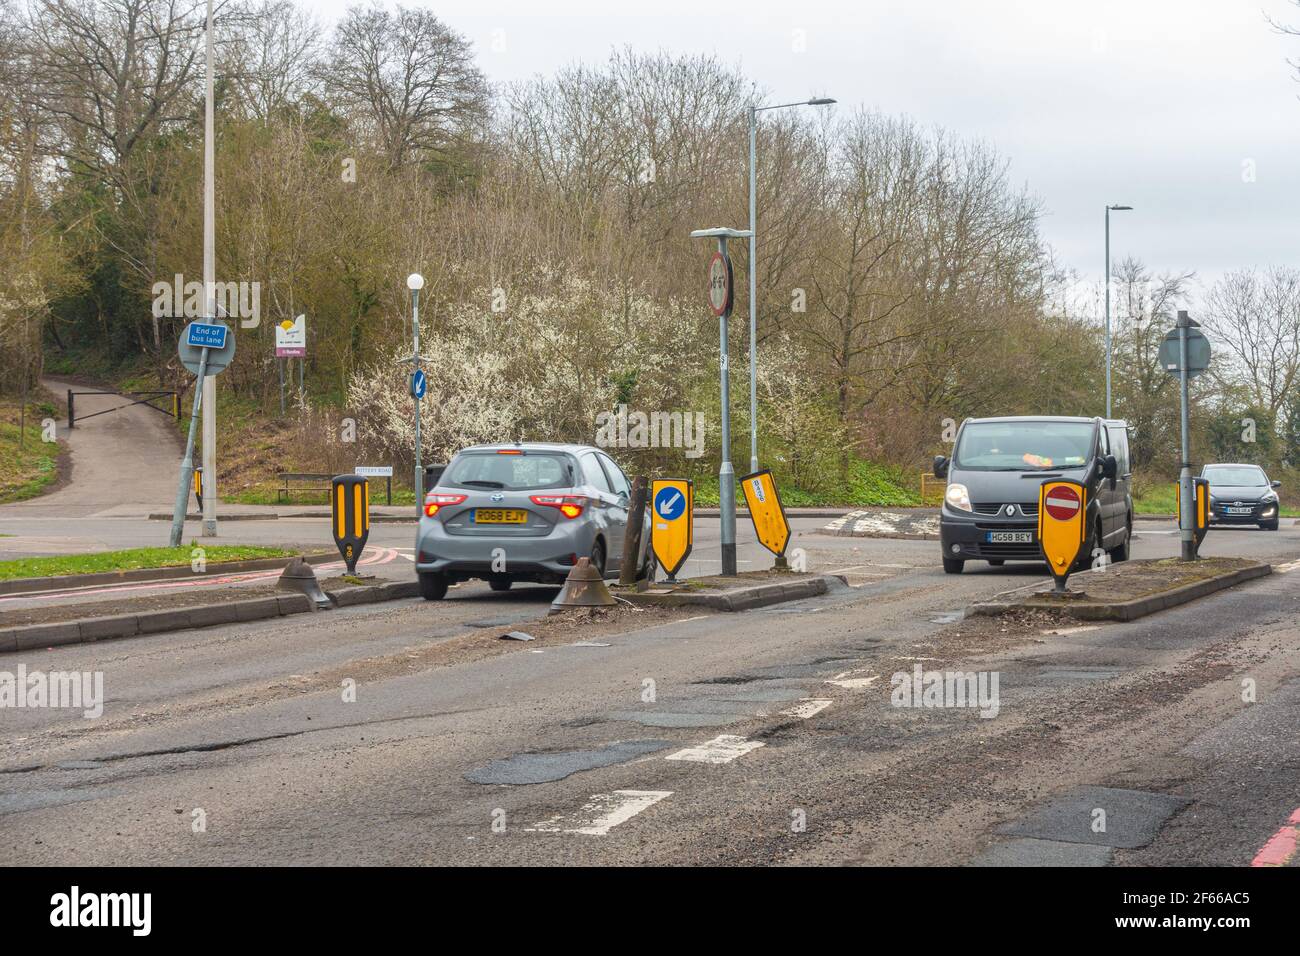 Maßnahmen zur Verkehrsberuhigung zur Verlangsamung des Verkehrs auf der Norcot Road in Reading, Großbritannien. Die Straße ist voller Schlaglöcher und muss repariert werden. Stockfoto